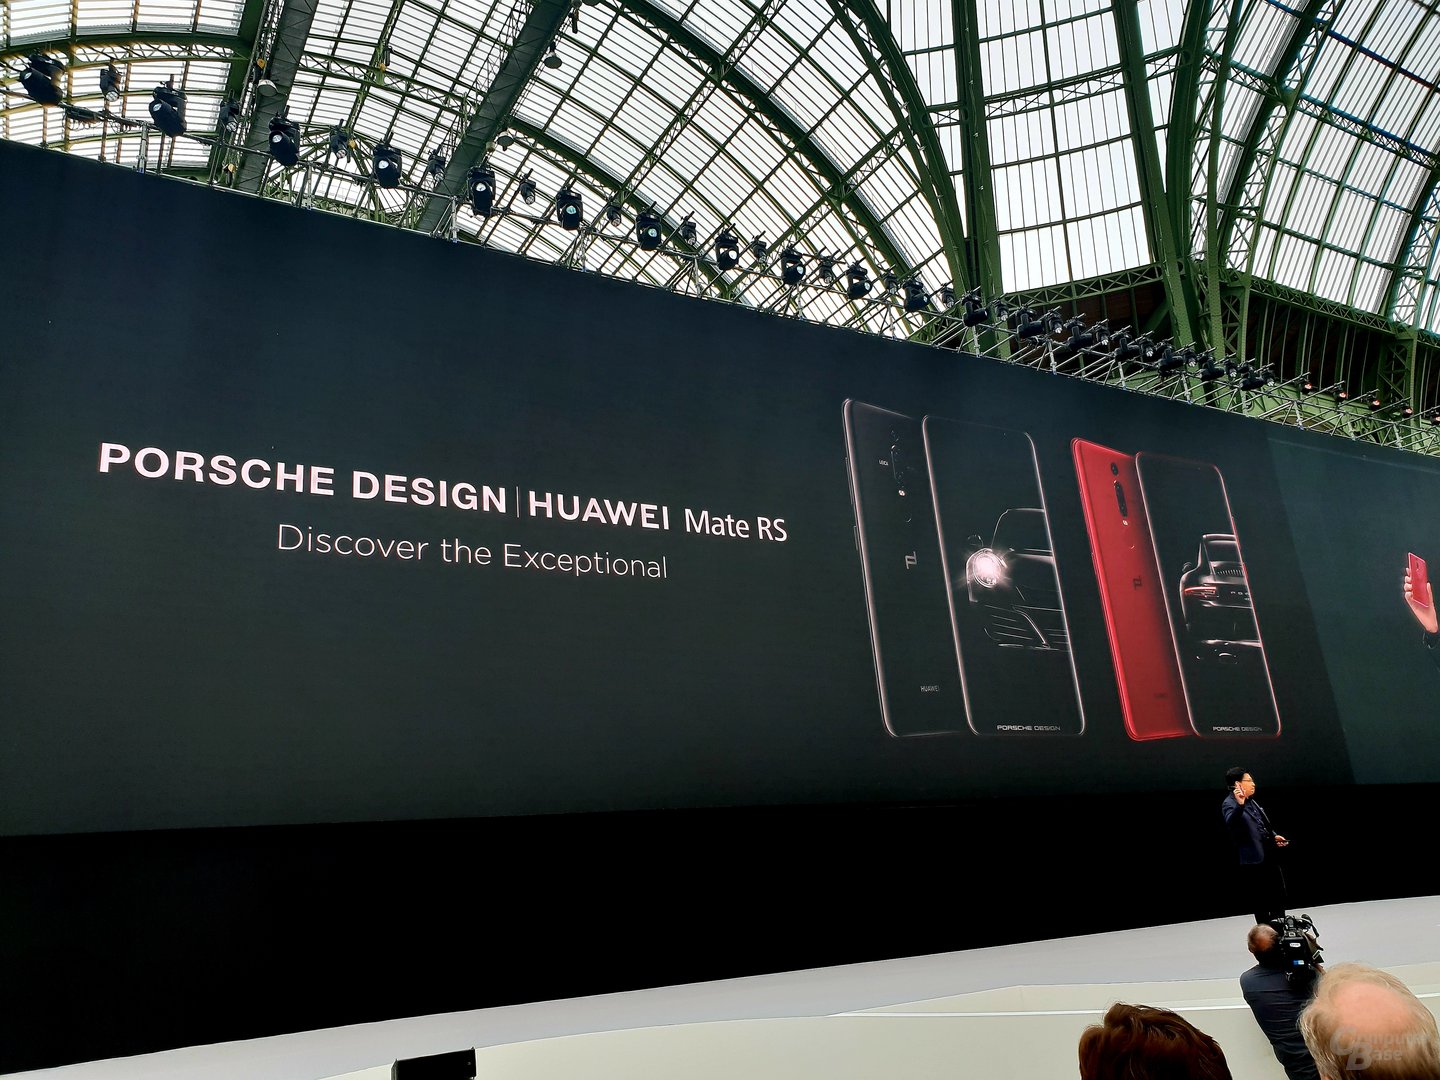 Porsche Design Huawei Mate RS